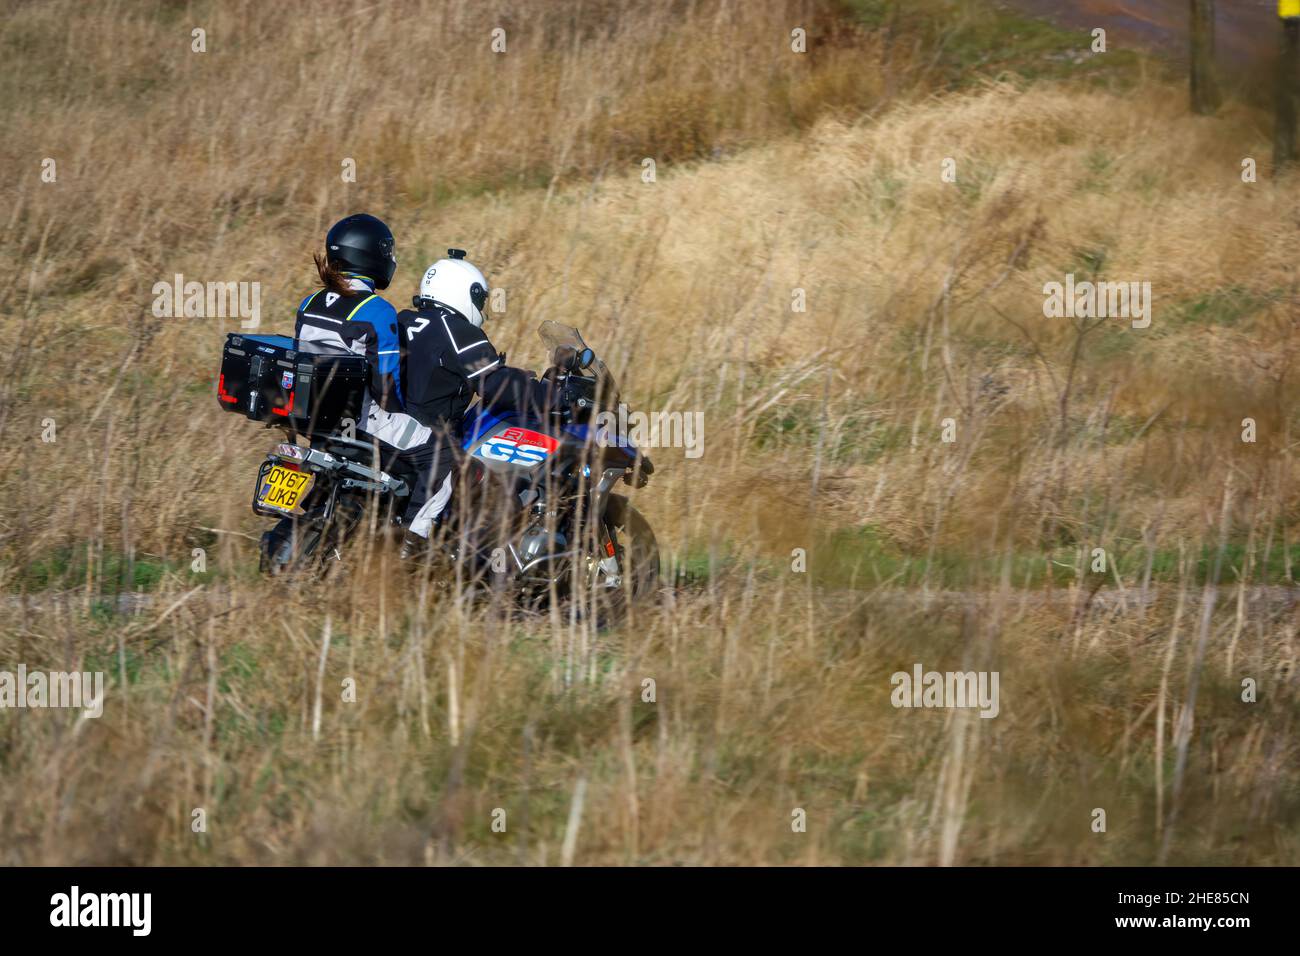 Pilote de moto et passager de pilolion sur une BMW R1200 GS moto voyageant à travers la campagne d'hiver Banque D'Images